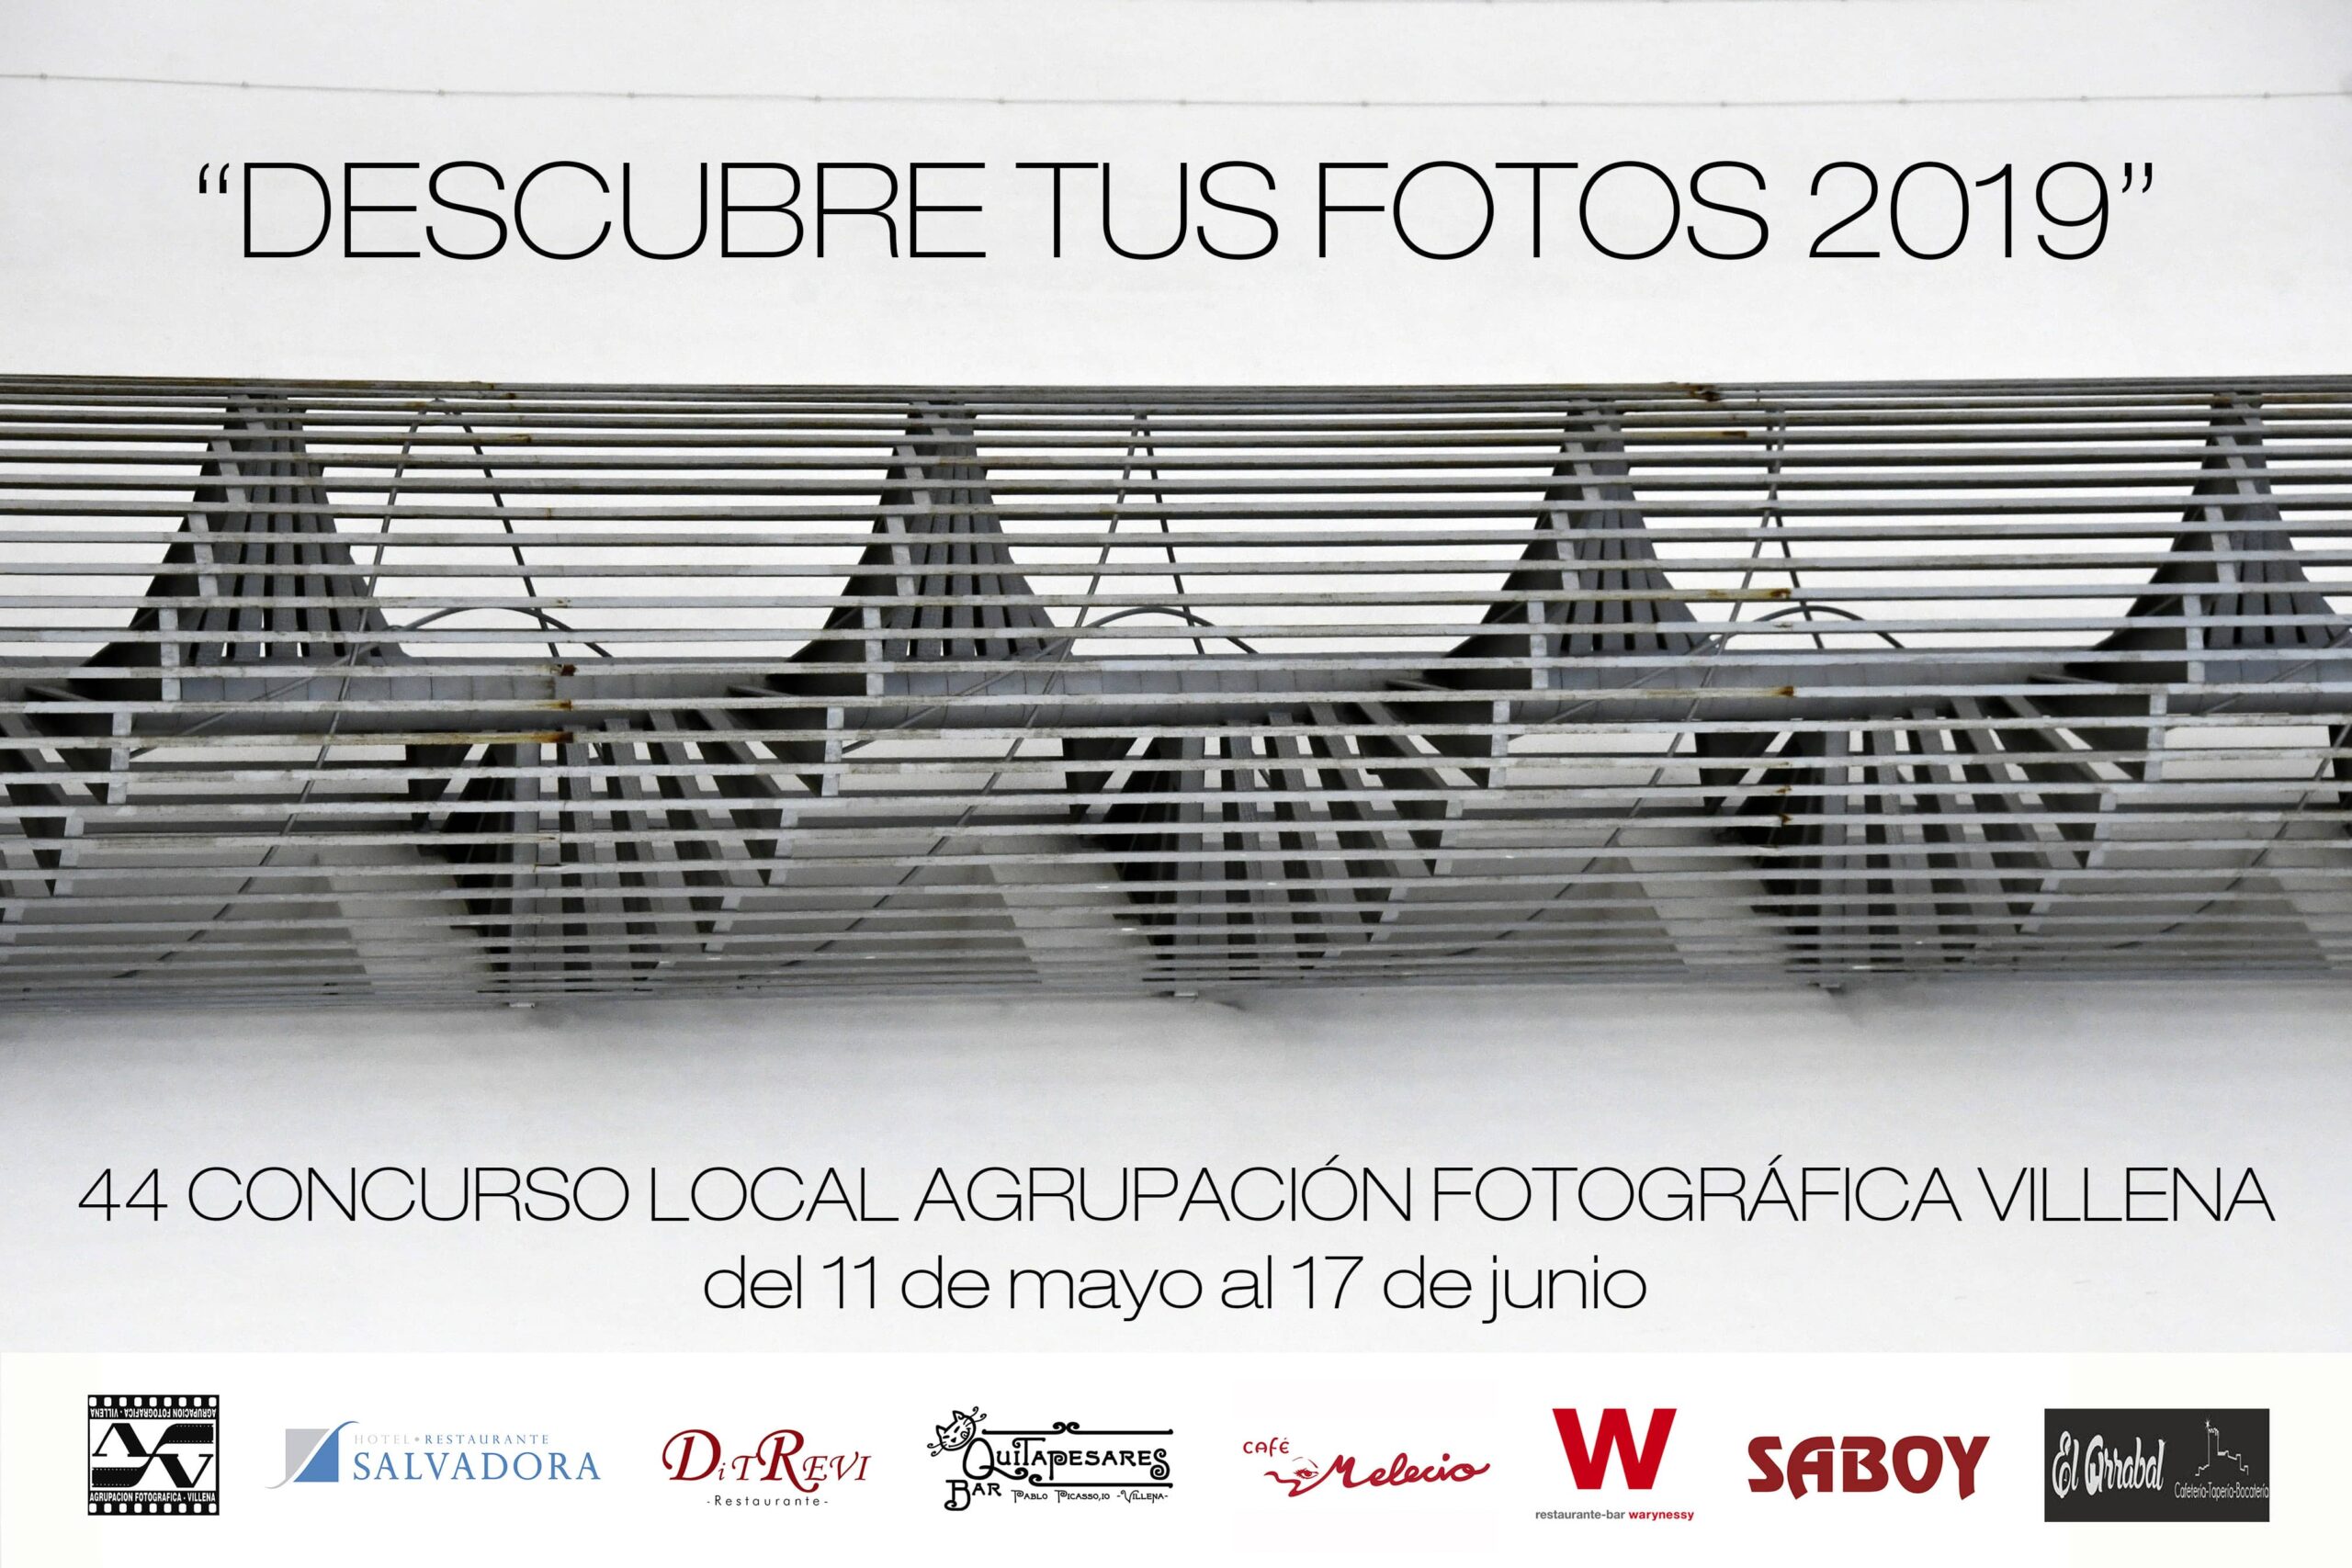 La Agrupación Fotográfica inaugura el 11 de mayo la exposición “Descubre tus fotos”